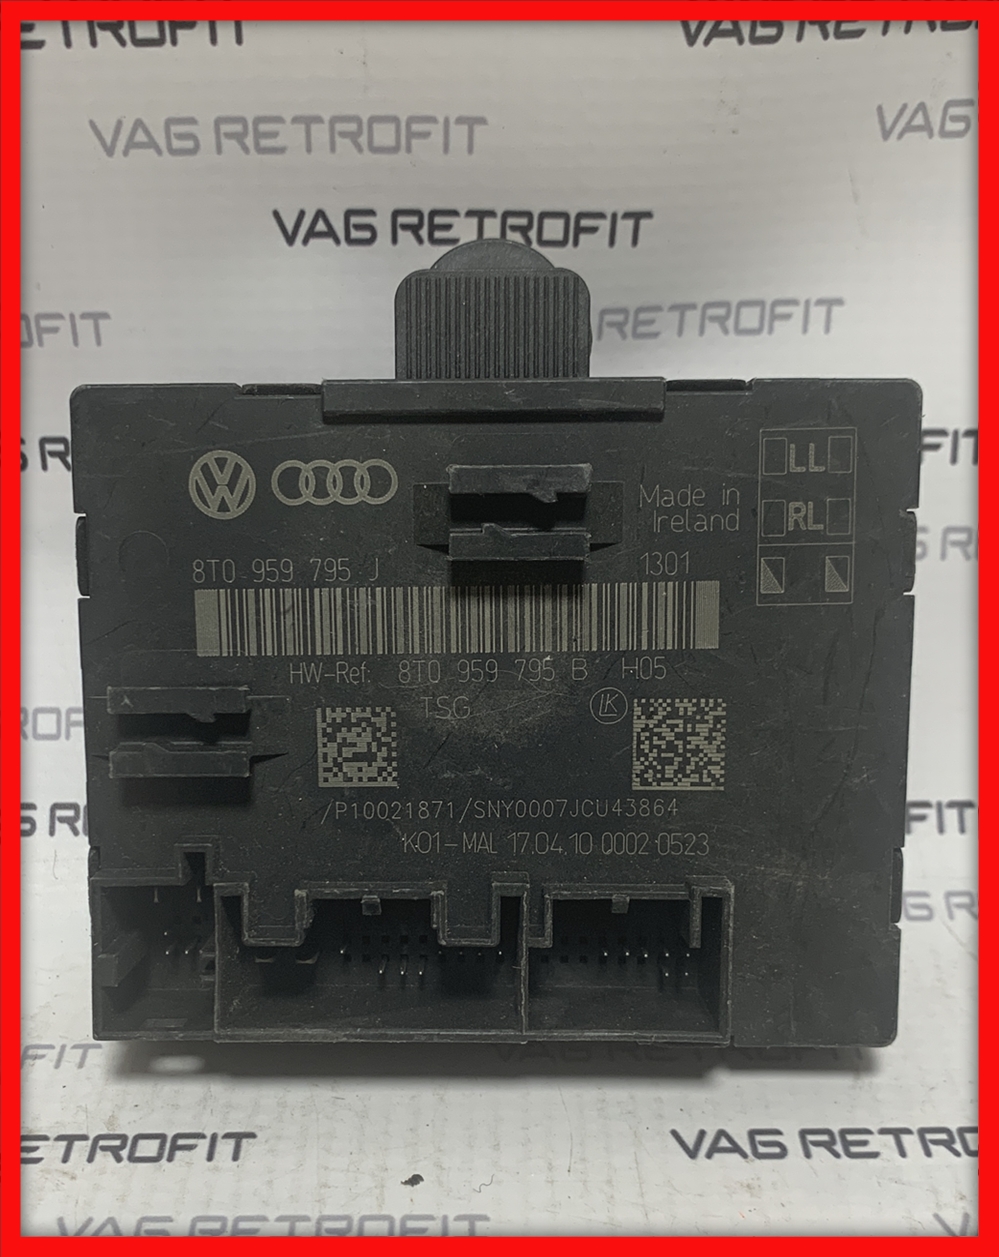 Poza - Calculator Modul Usa Audi A4 B8 8T A5 8T 8T0959795J 8T0 959 795 J